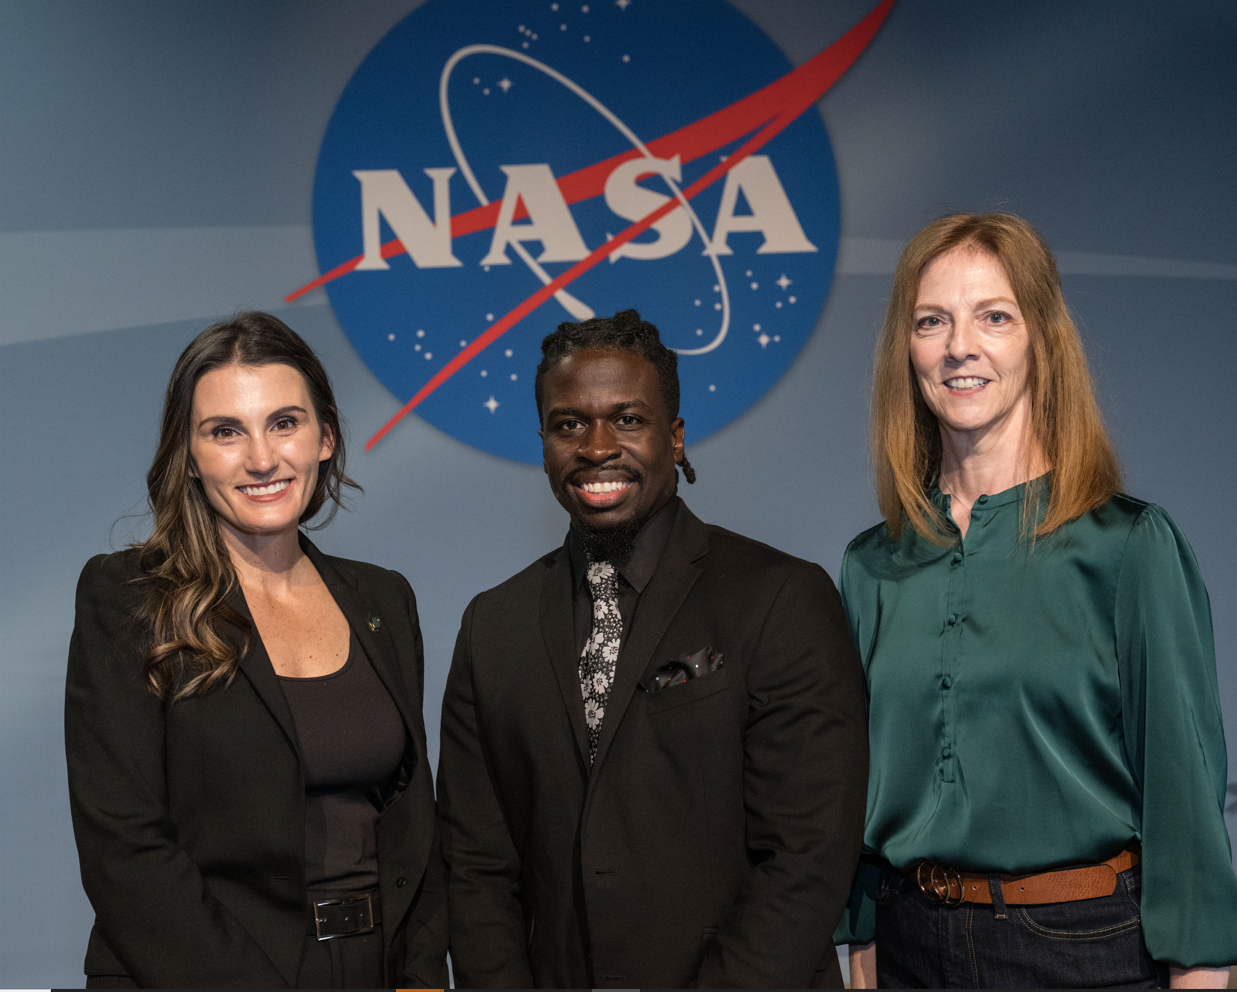 Seminar speakers Kelli Kedis Ogborn, Nathaniel Benjamin, and Beth Strathman. Credits: NASA